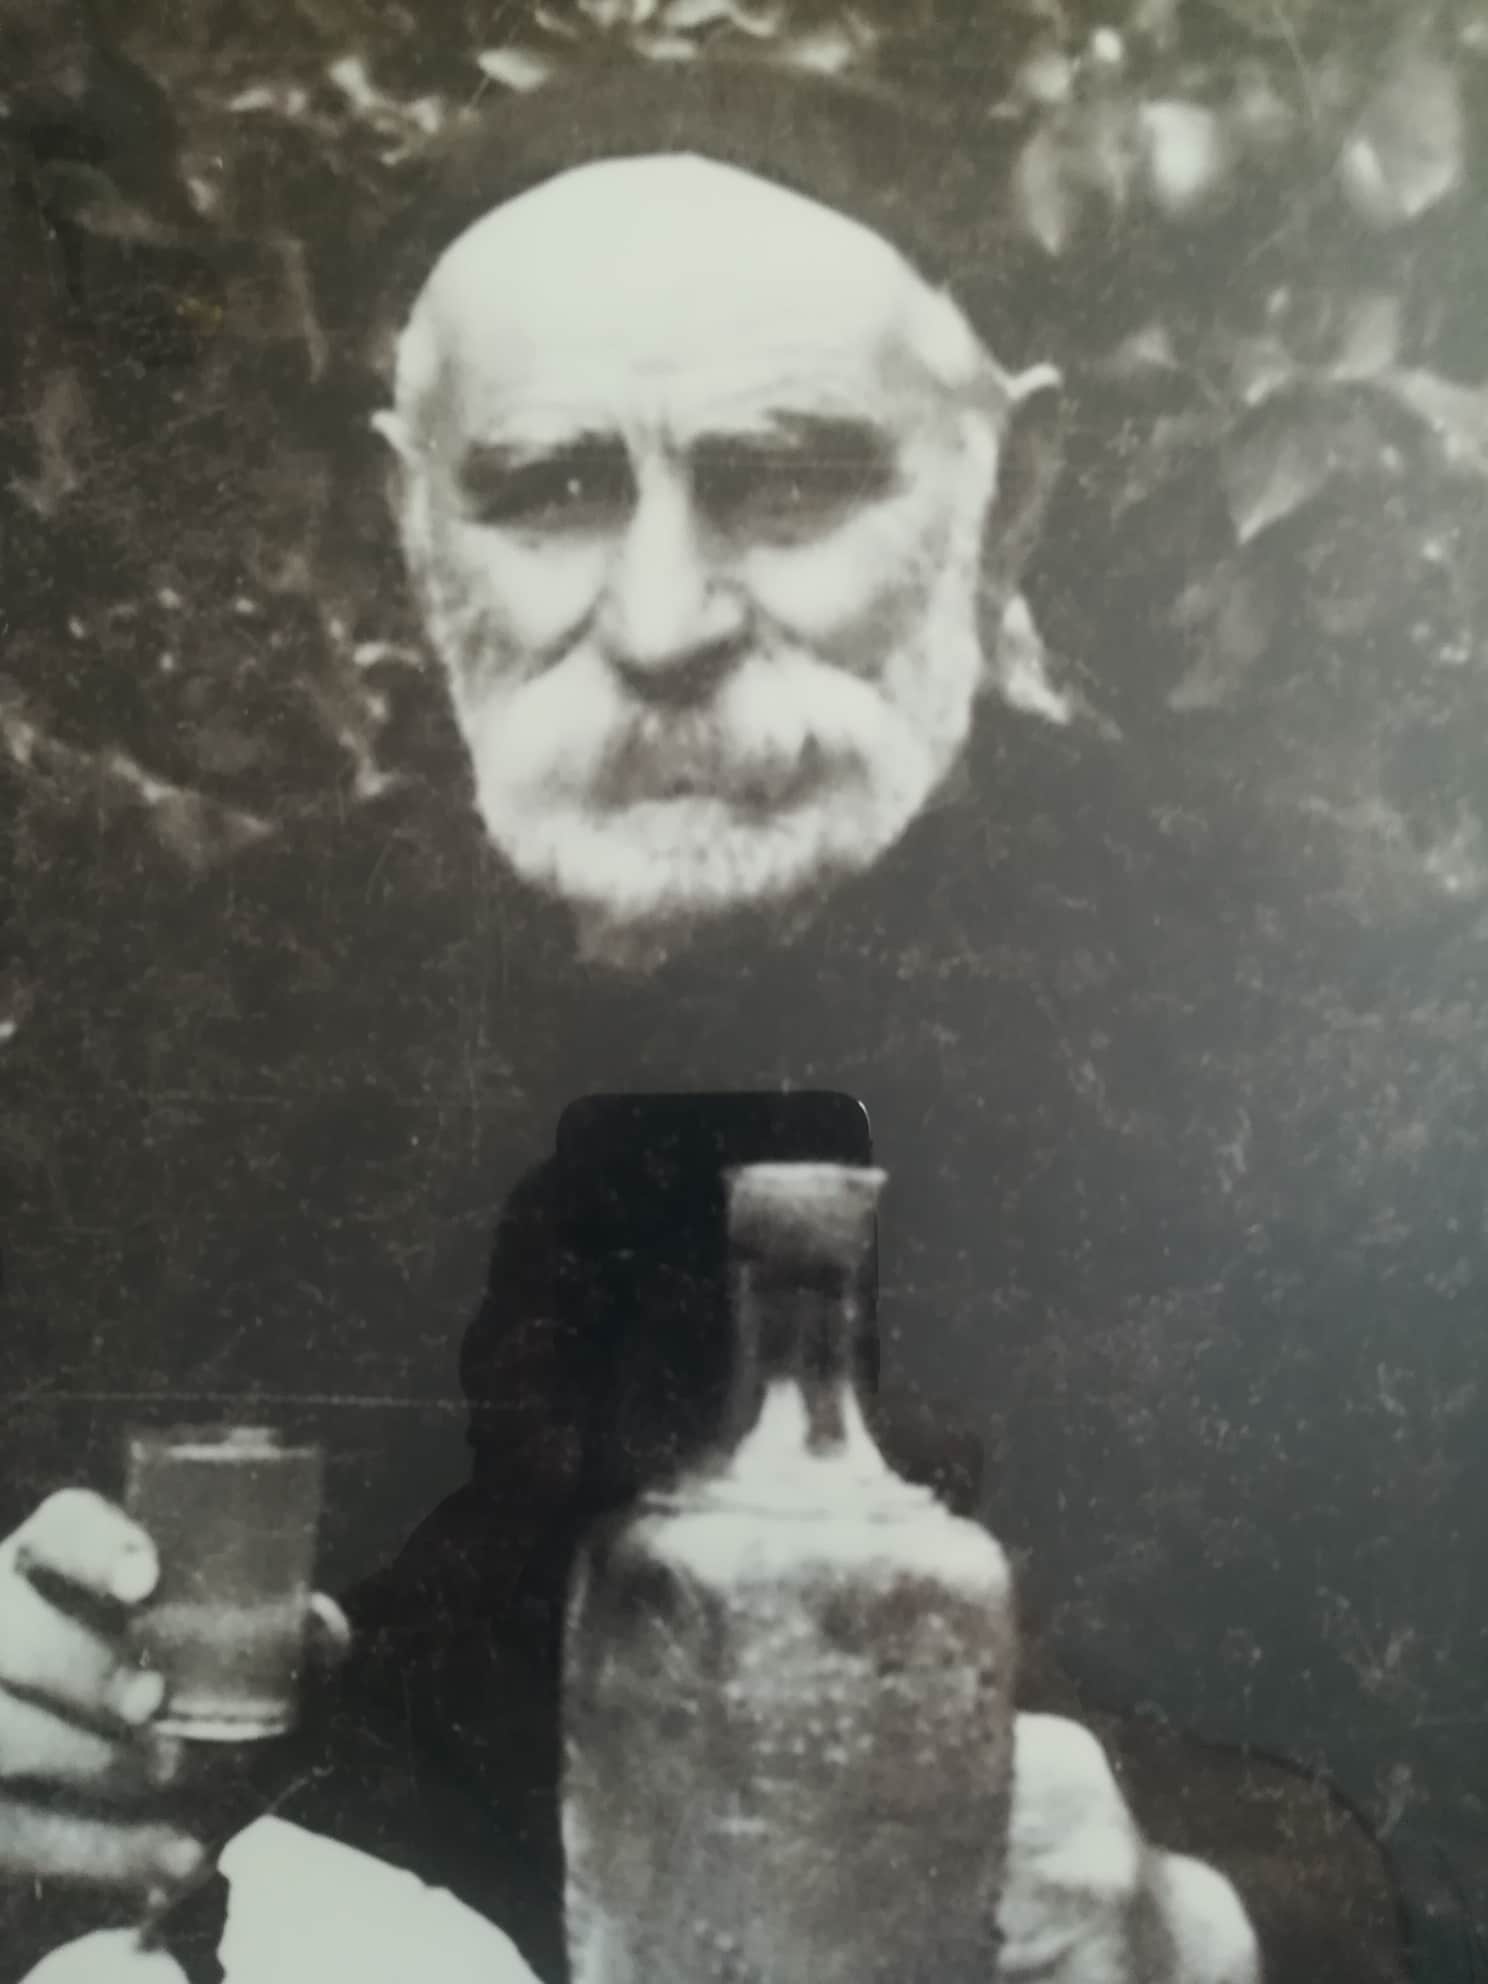 ერასტი ჯამრულიძე 1875-1962წწ გარდ. 87 წლის, თუშეთის უკანასკნელი მამასახლისი დაბ. სოფ. ხისო, ომალო, თუშეთი. 